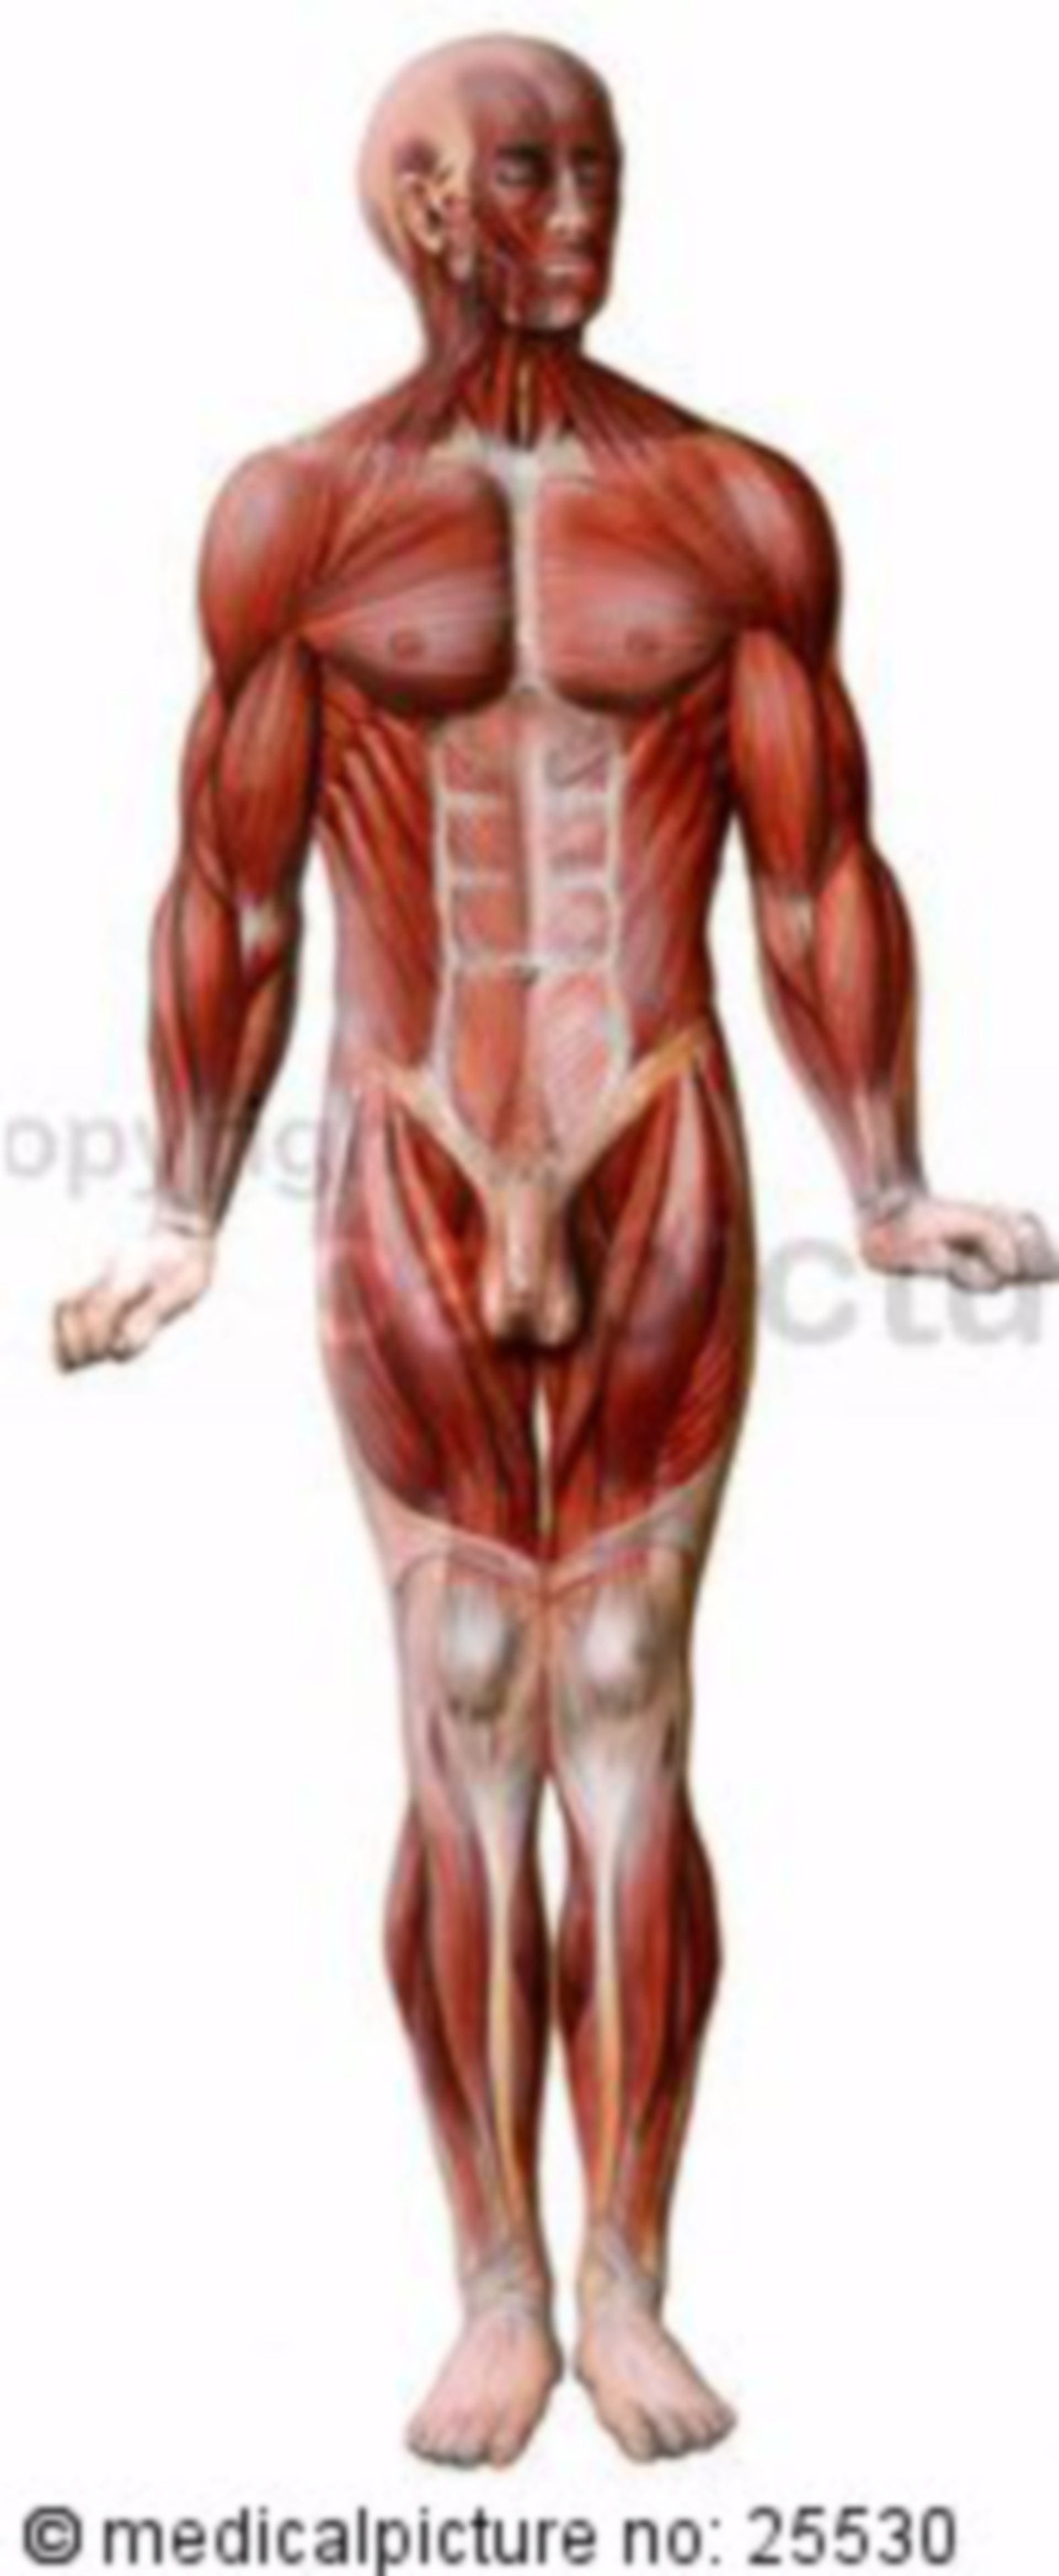 Human skeletal muscles